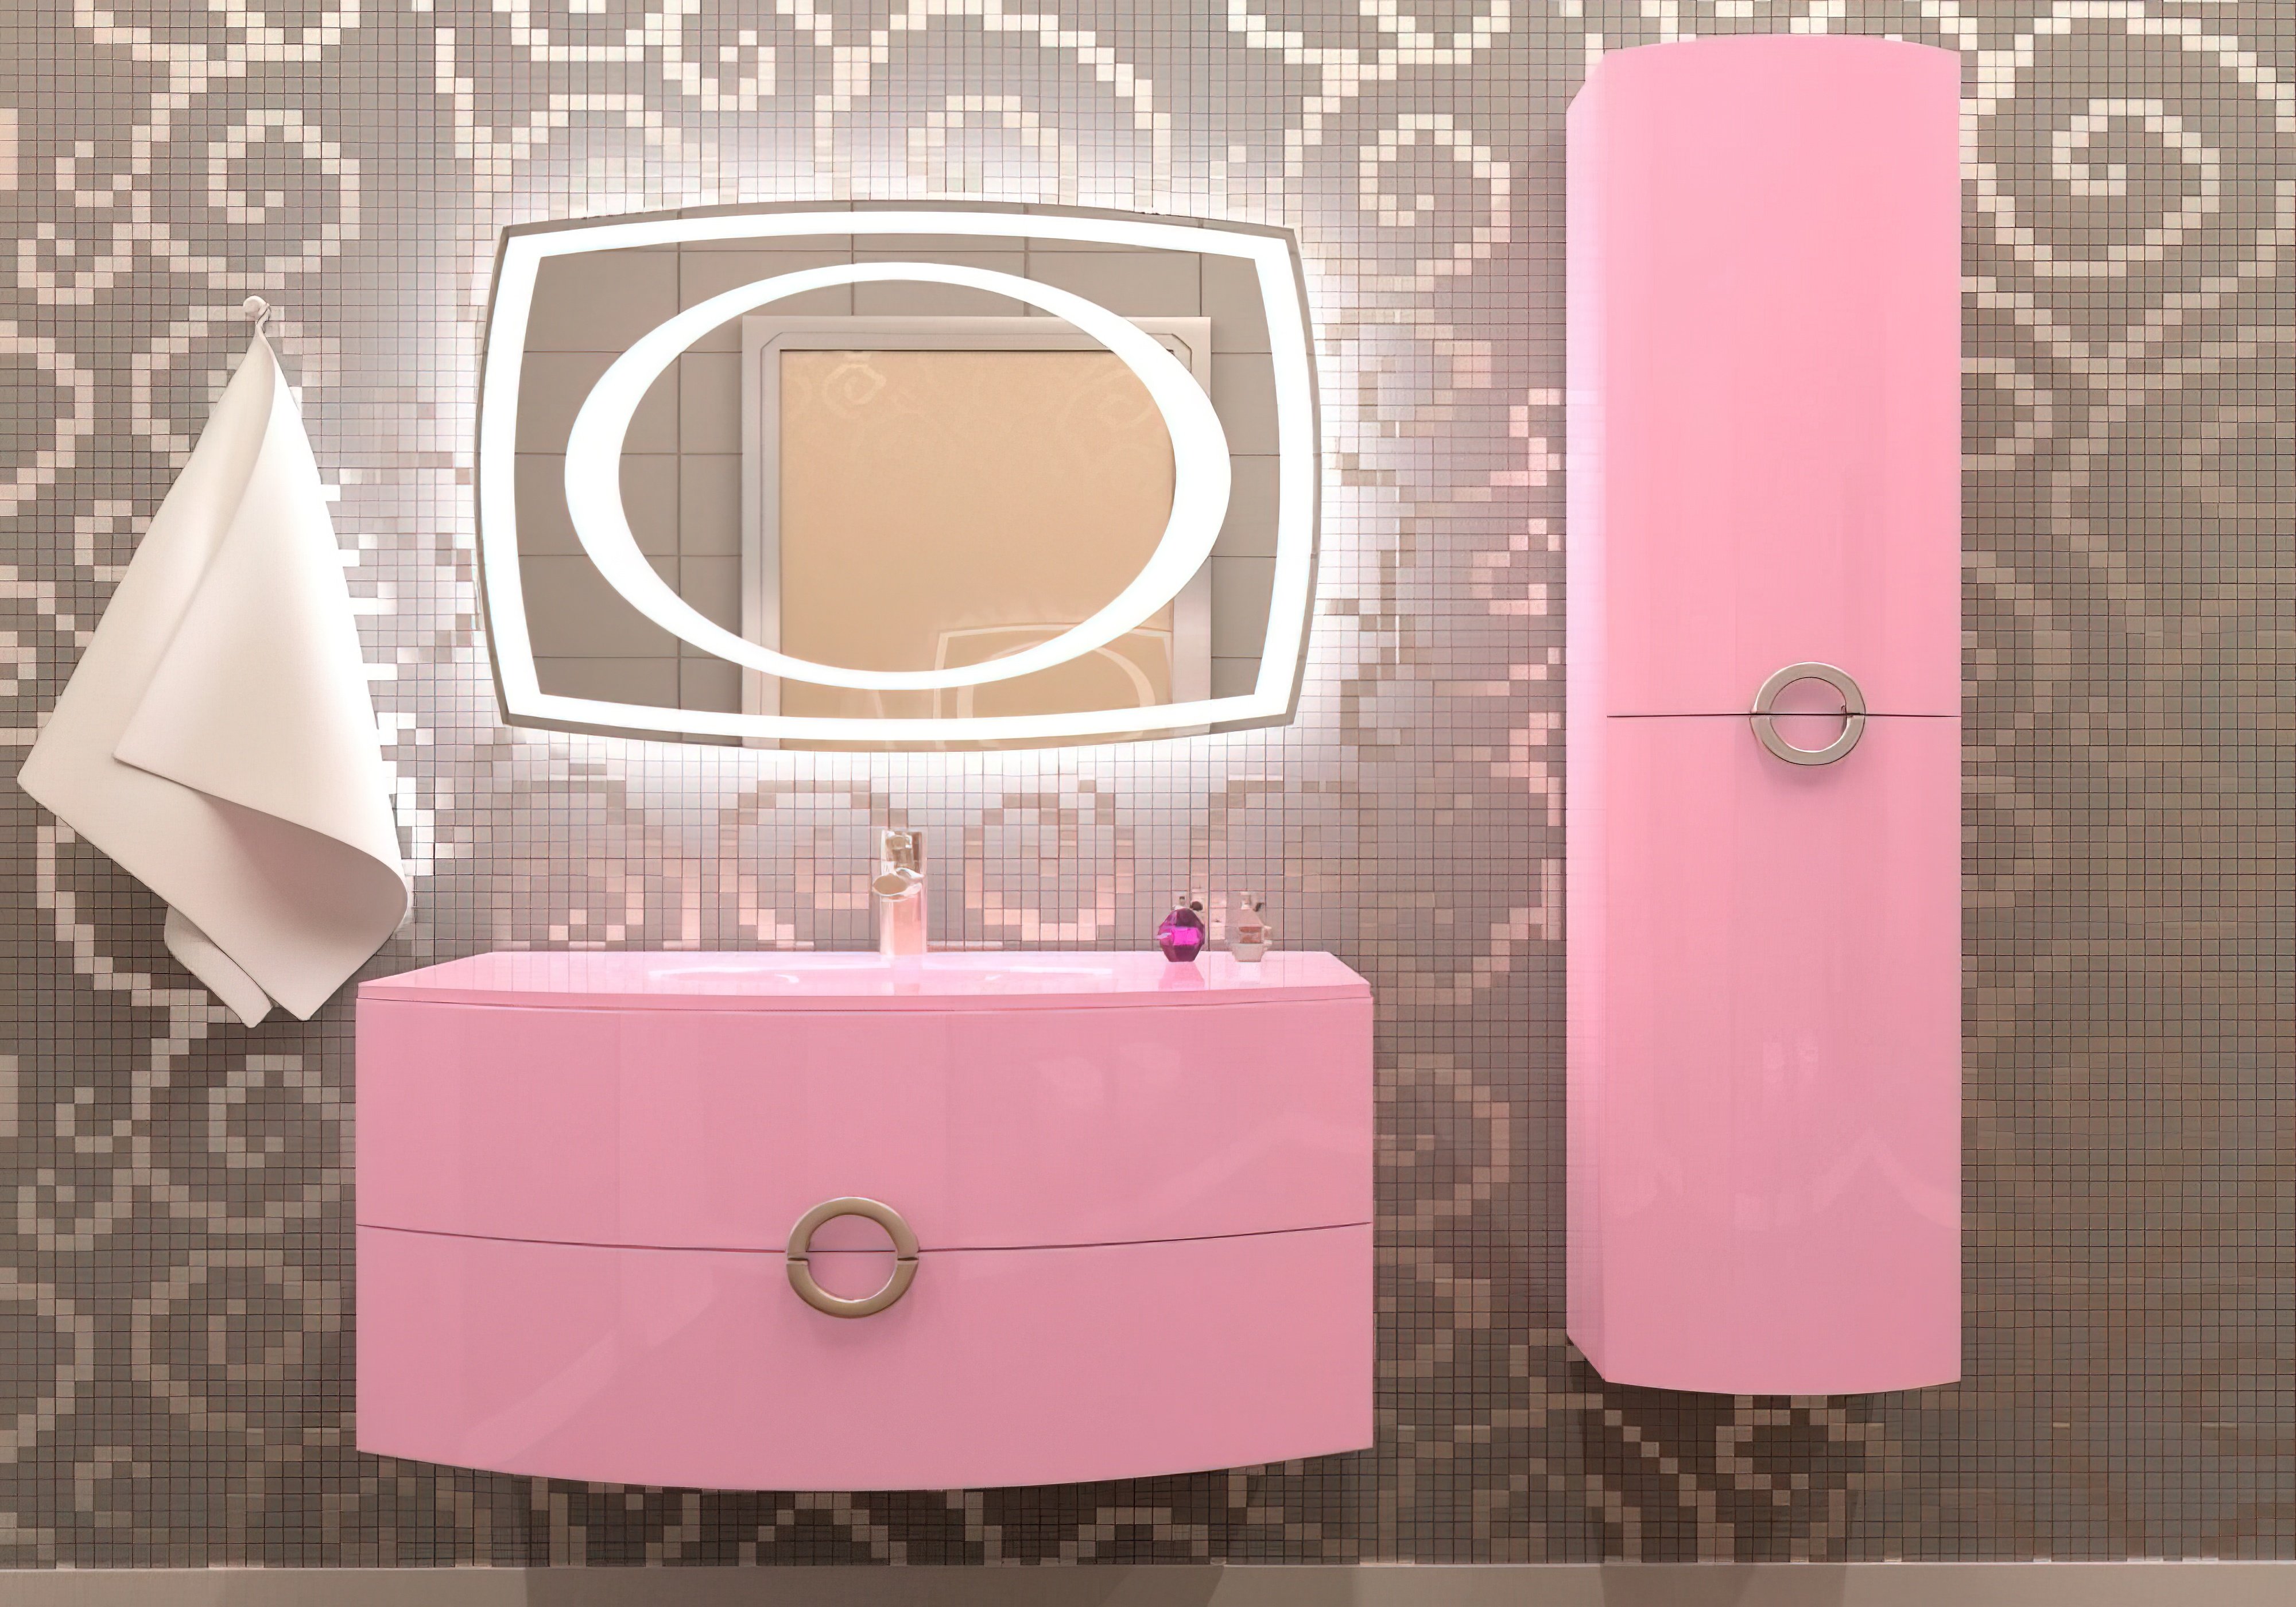  Купить Мебель для ванной комнаты Комплект мебели для ванной "Beatrice" Marsan